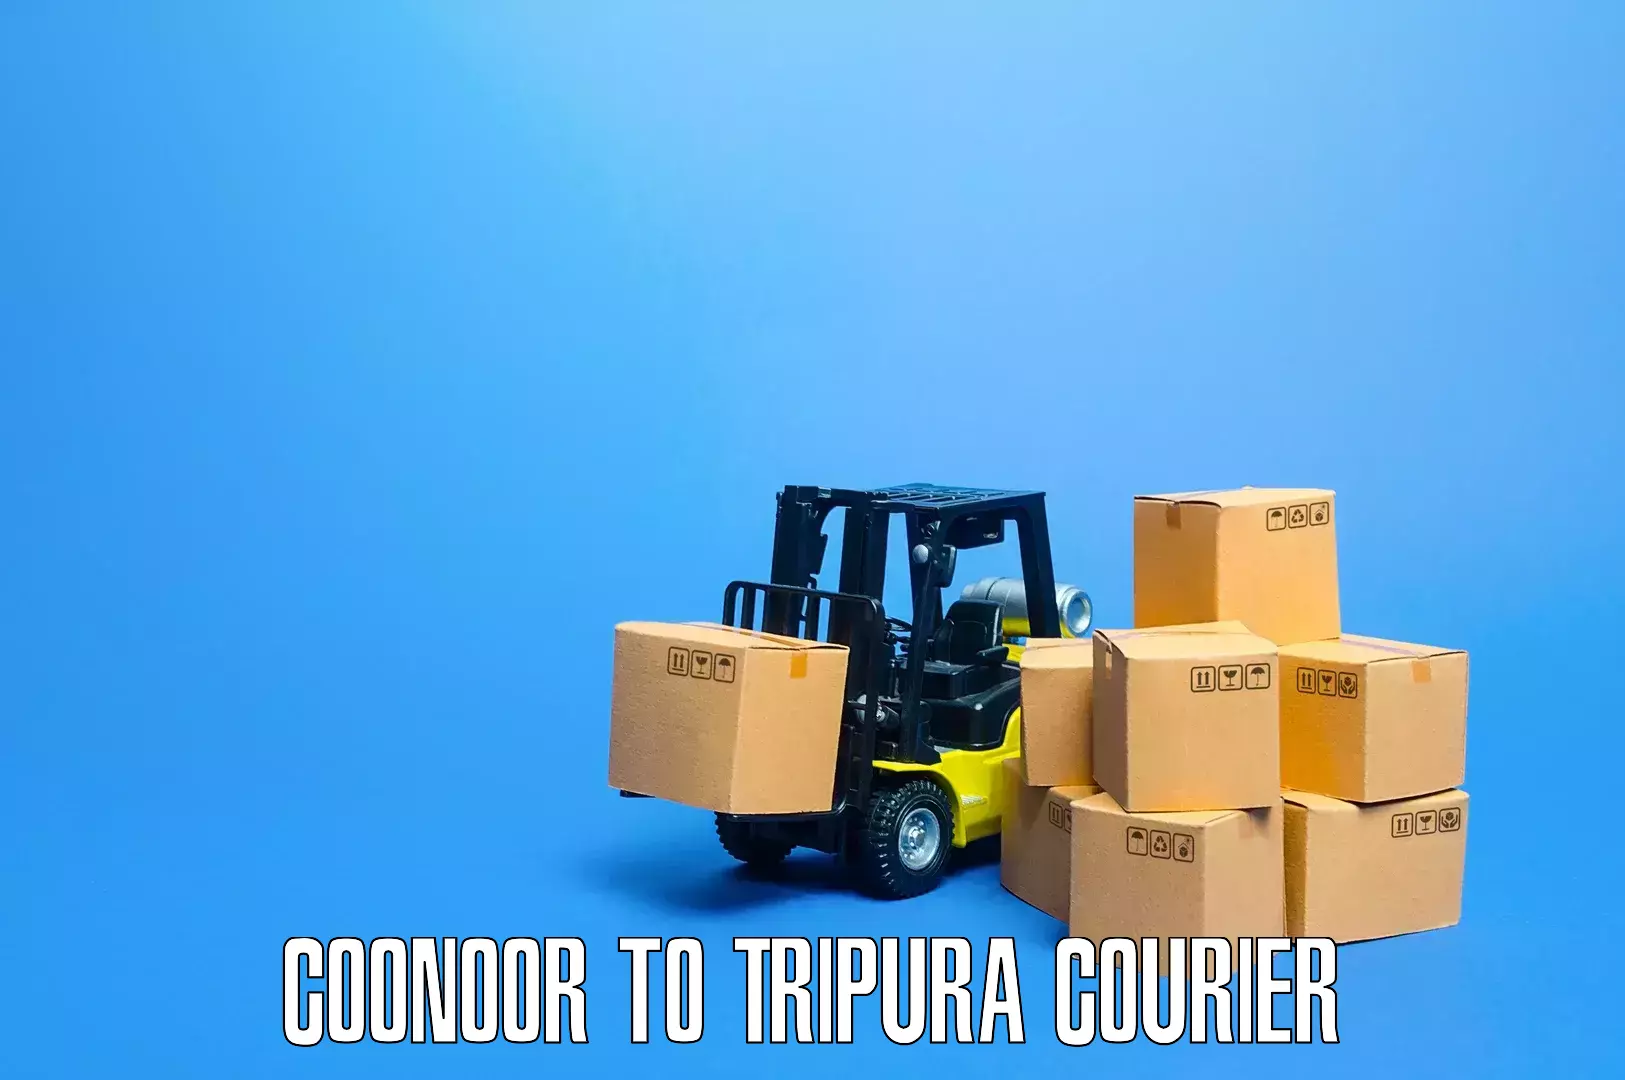 Furniture relocation experts Coonoor to IIIT Agartala